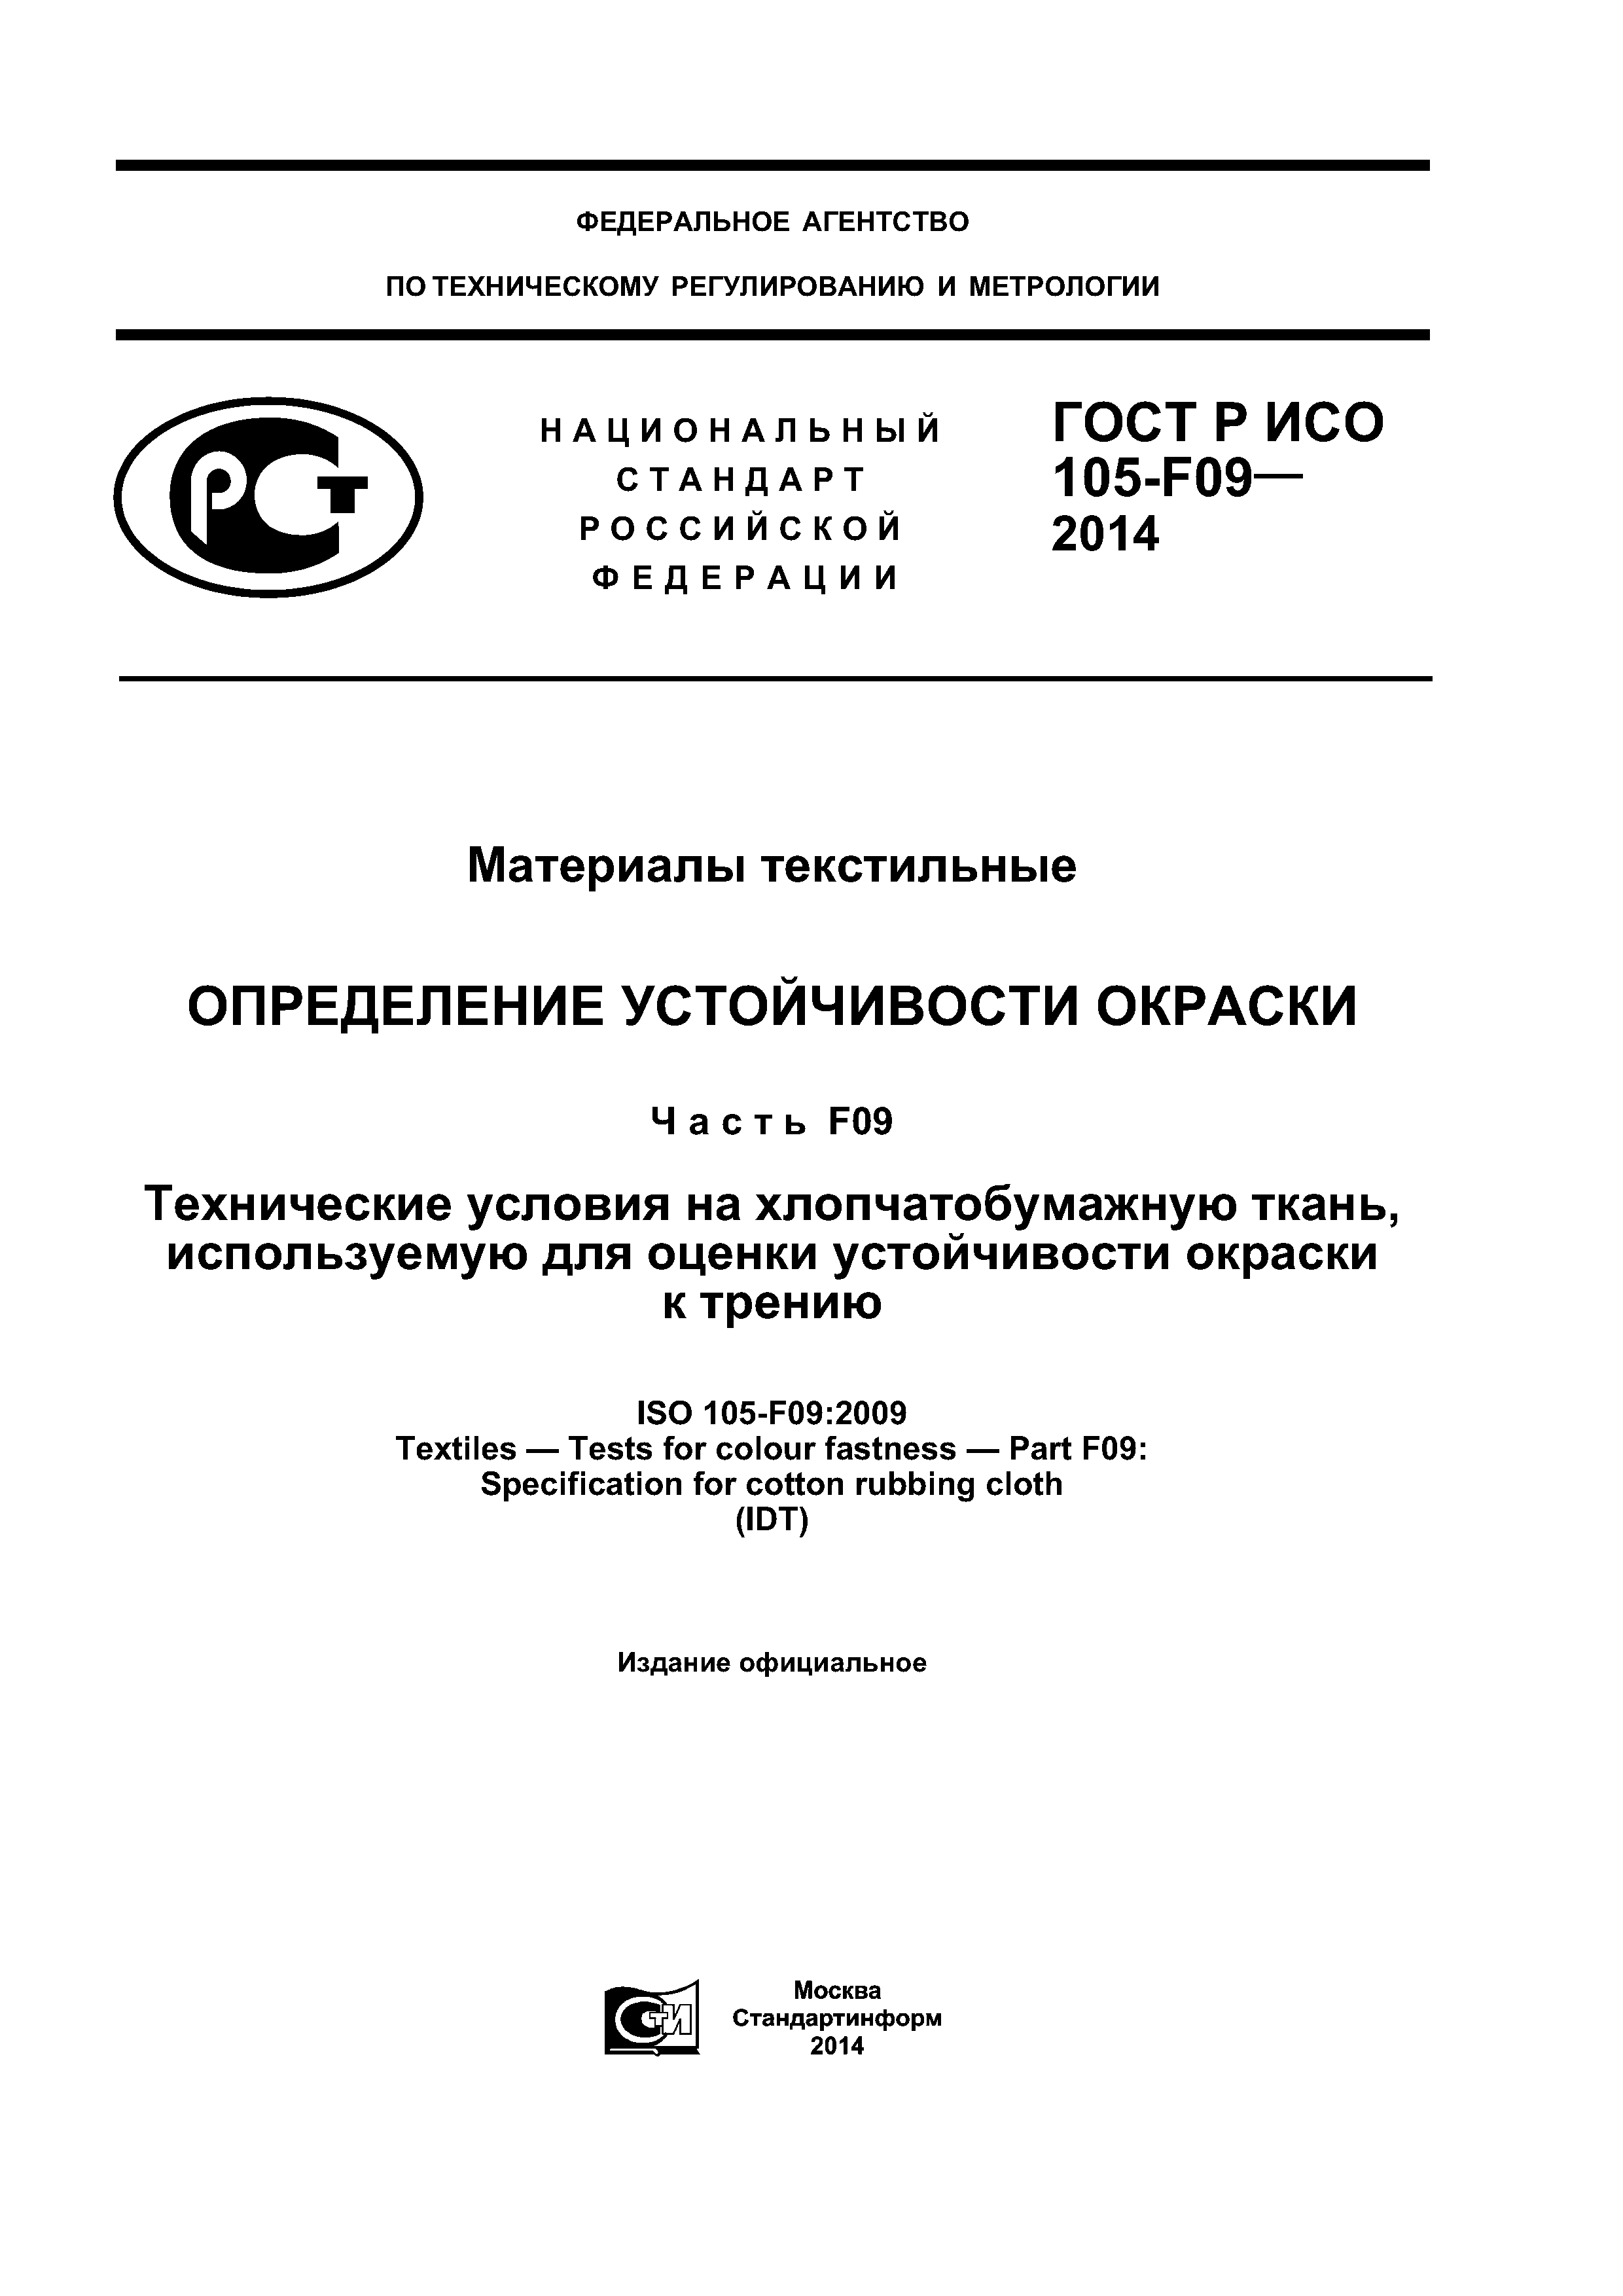 ГОСТ Р ИСО 105-F09-2014